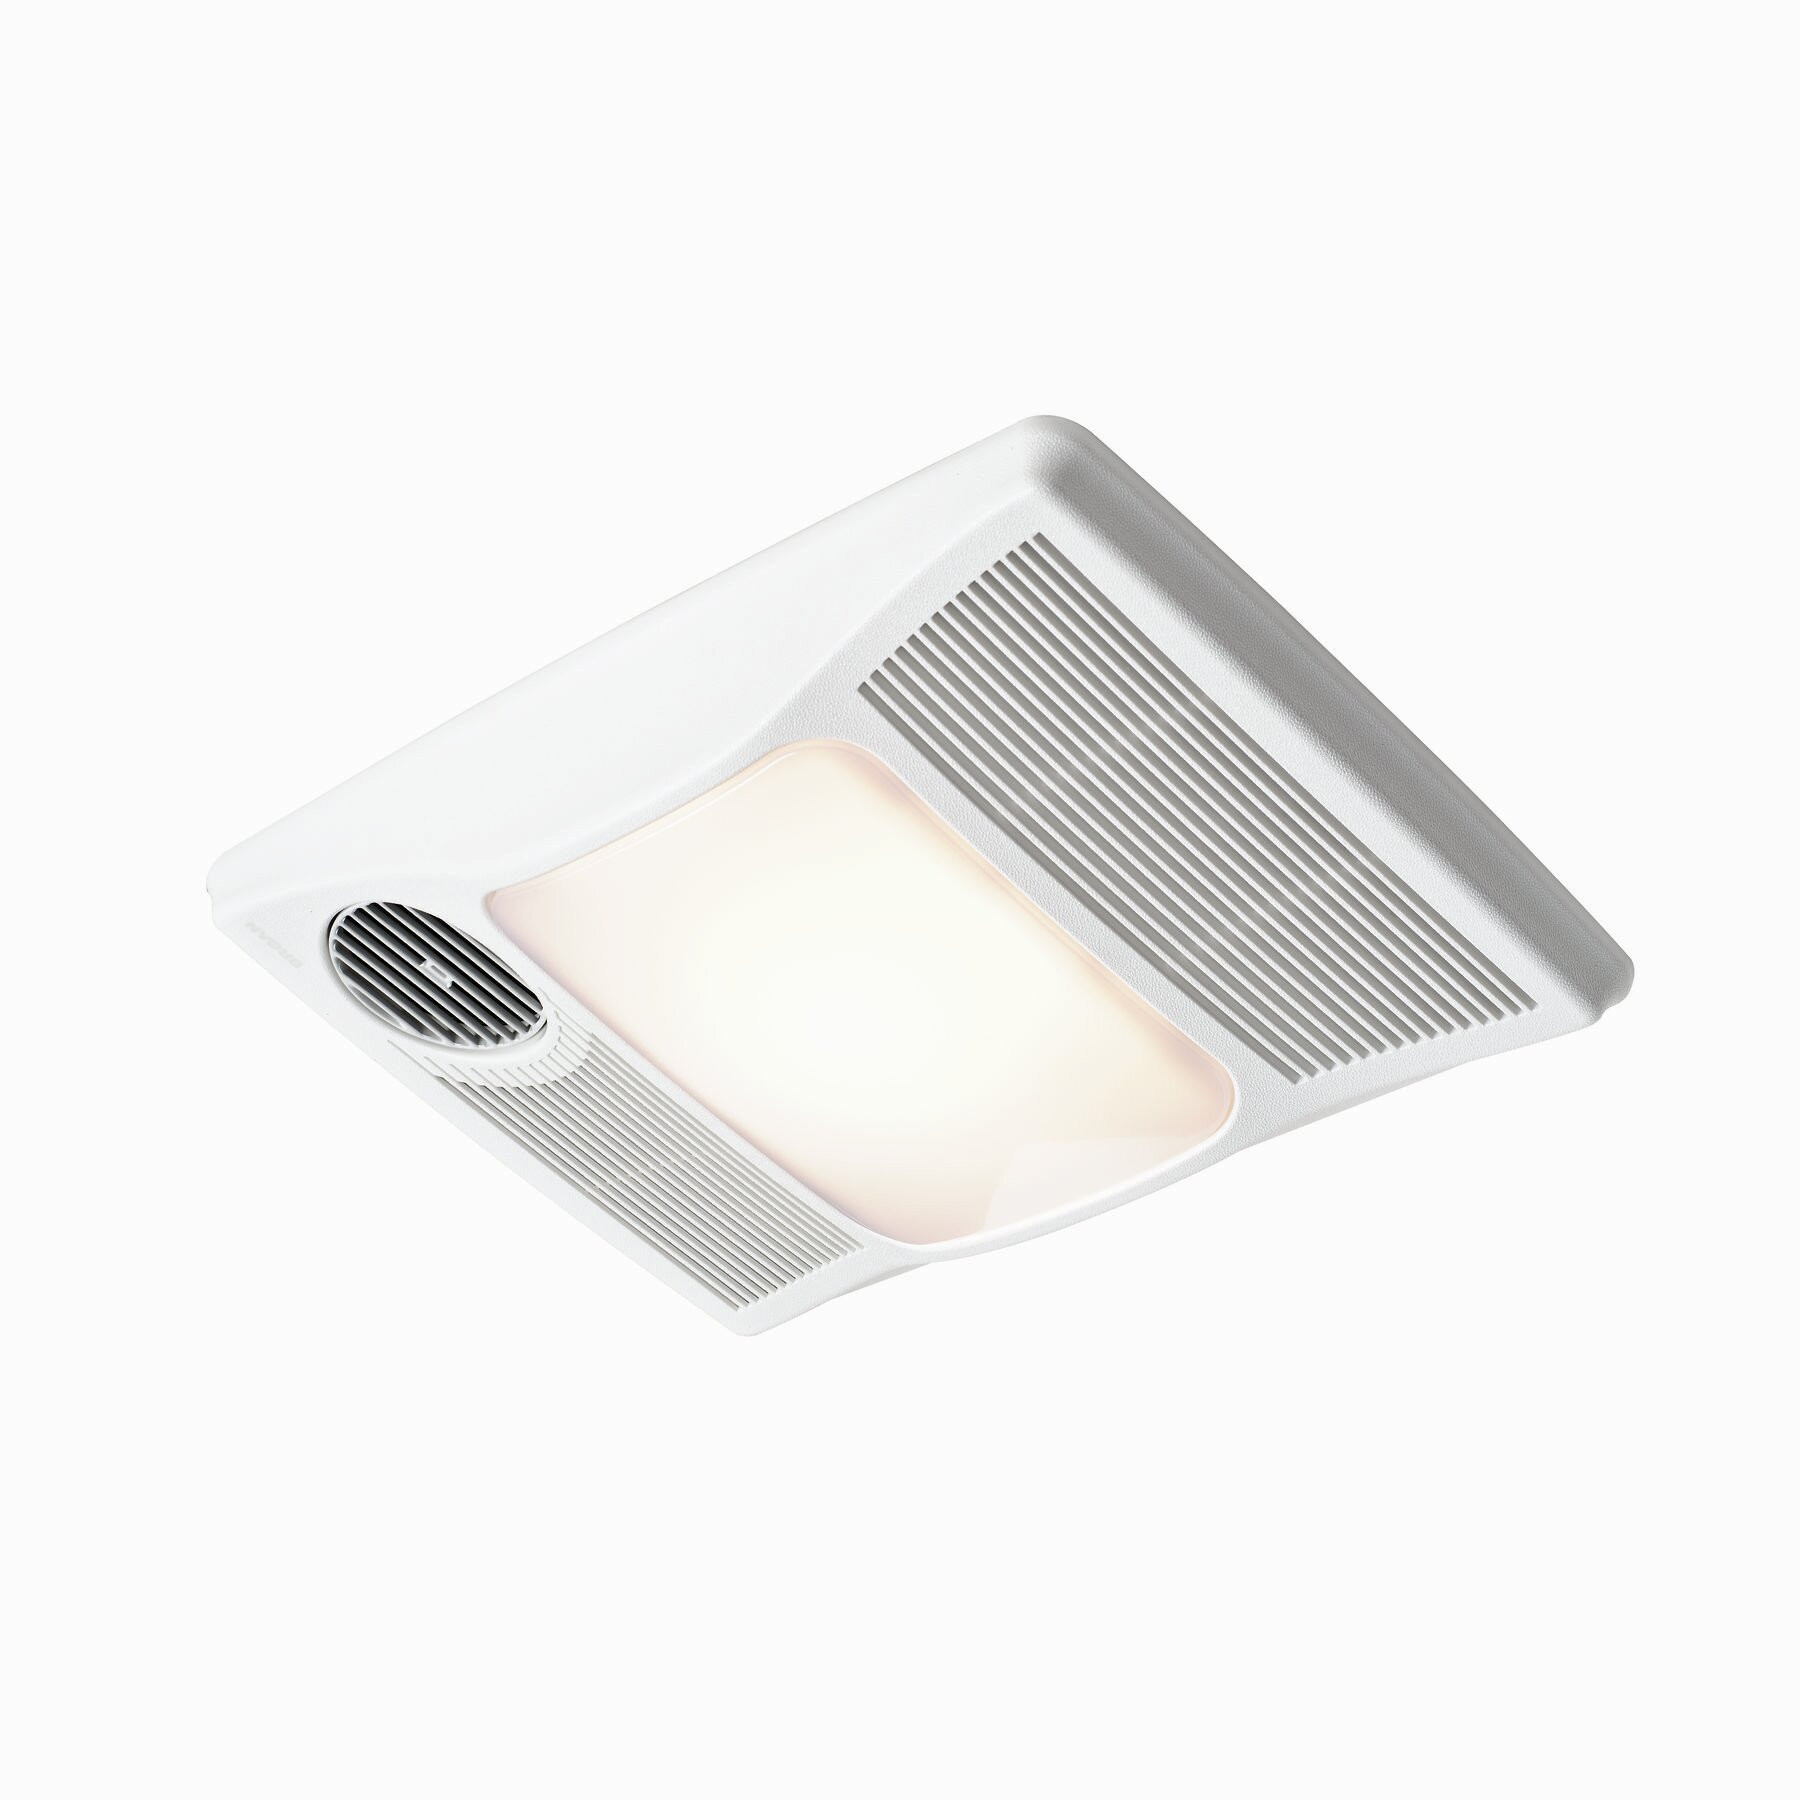 Bathroom Fan Light Heater
 Broan 100 CFM Bathroom Fan with Heater and Light & Reviews